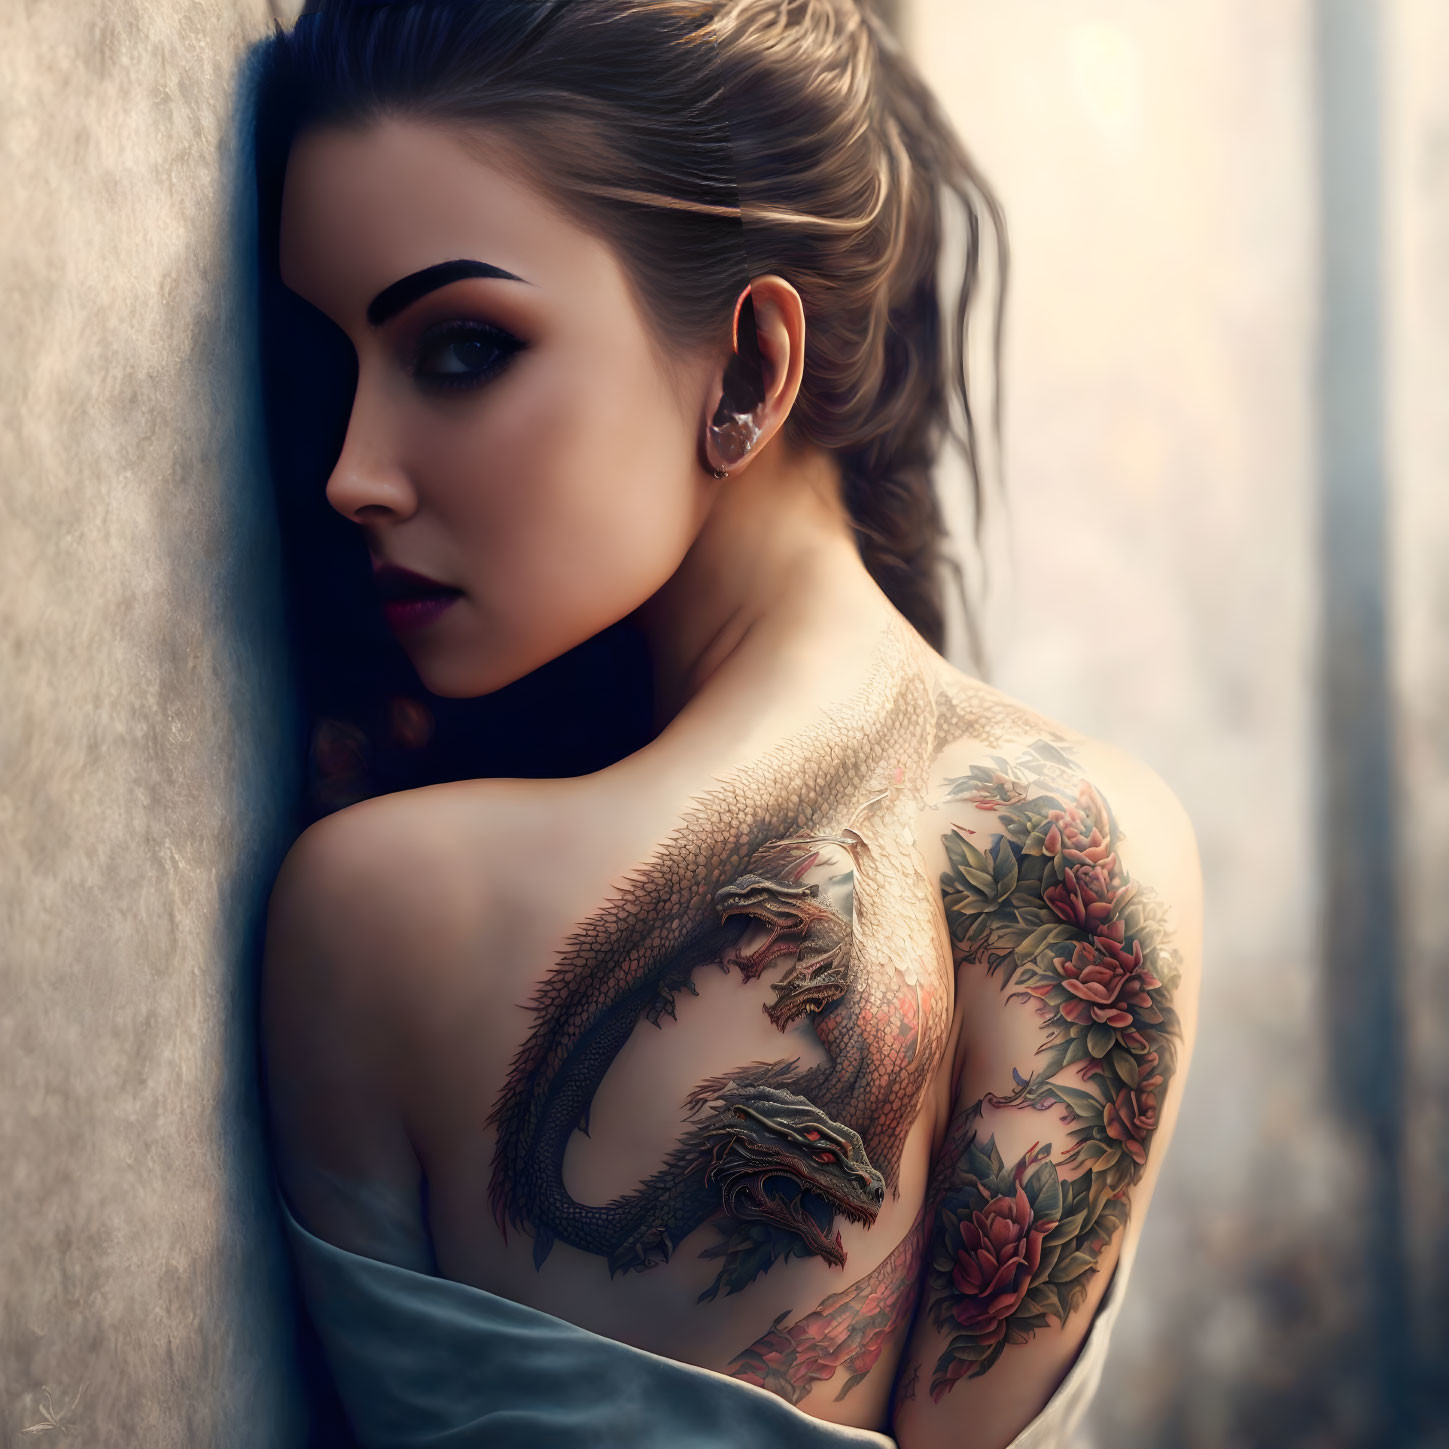 Tattooed woman 